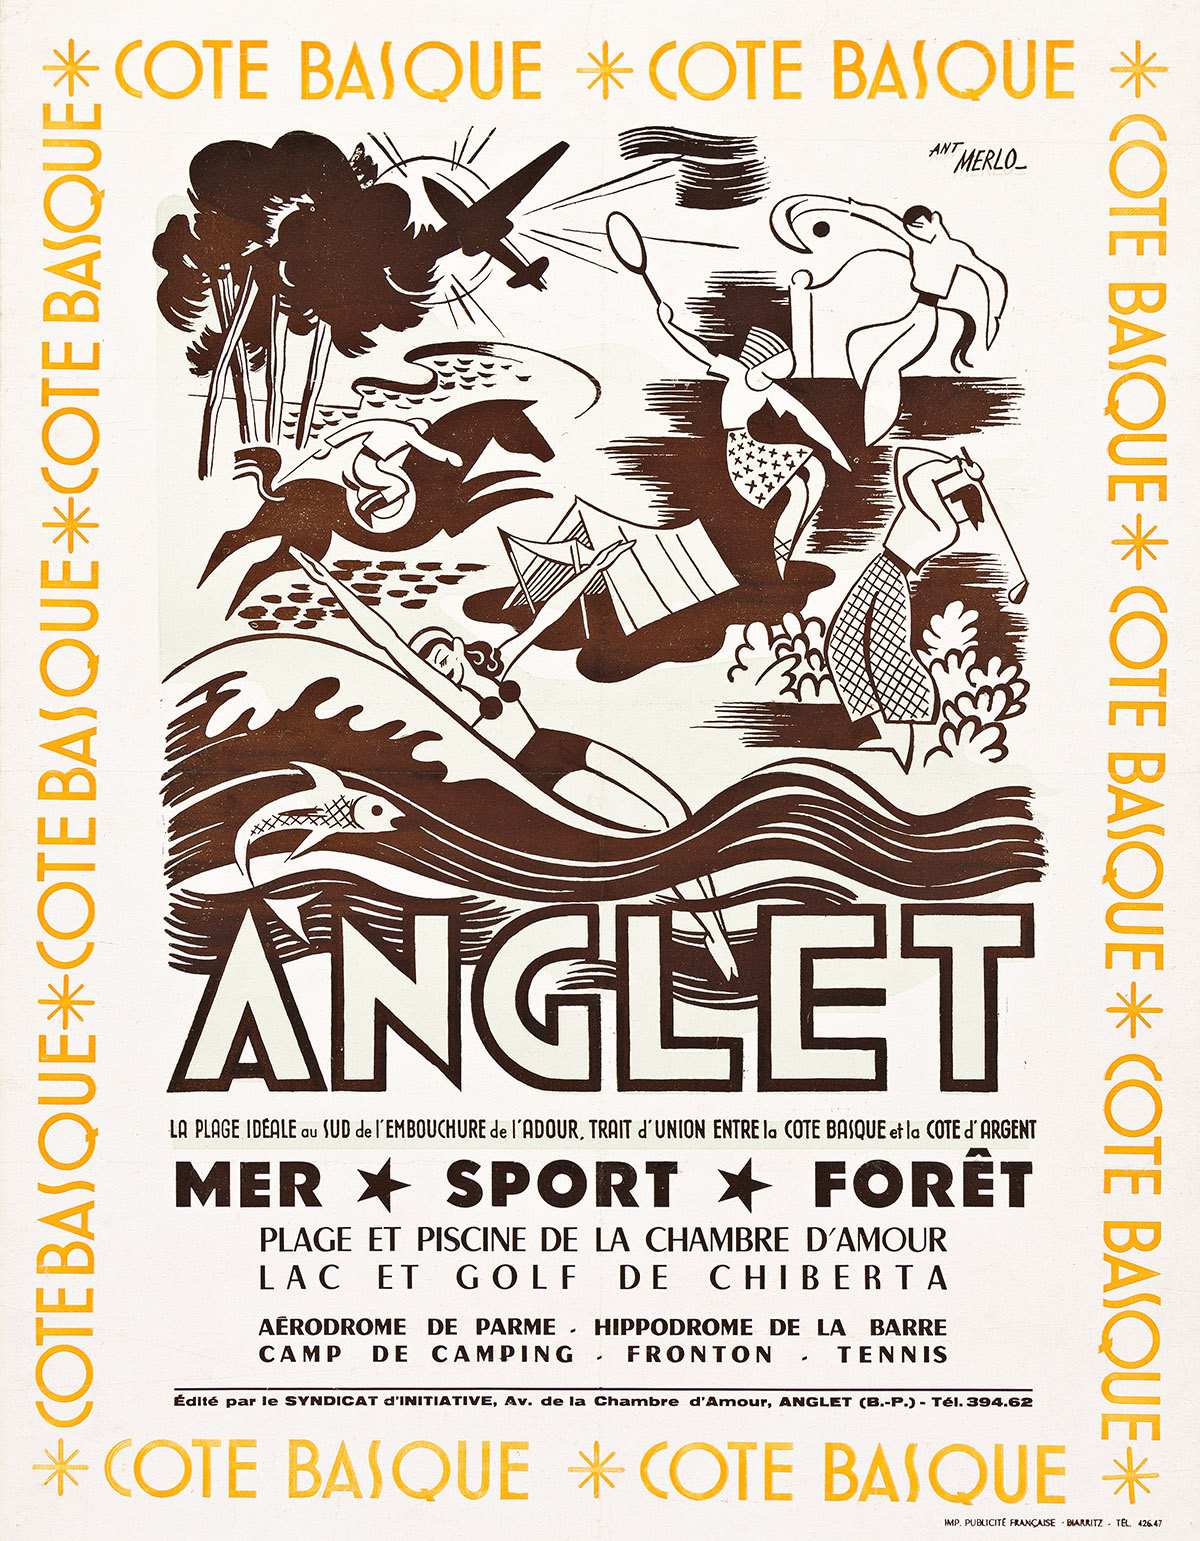 ANT. MERLO (DESIGNER UNKNOWN). ANGLET / COTE BASQUE. Circa 1946. 26x20 inches, 66x50¾ cm. Publicité Francaise, Biarritz.